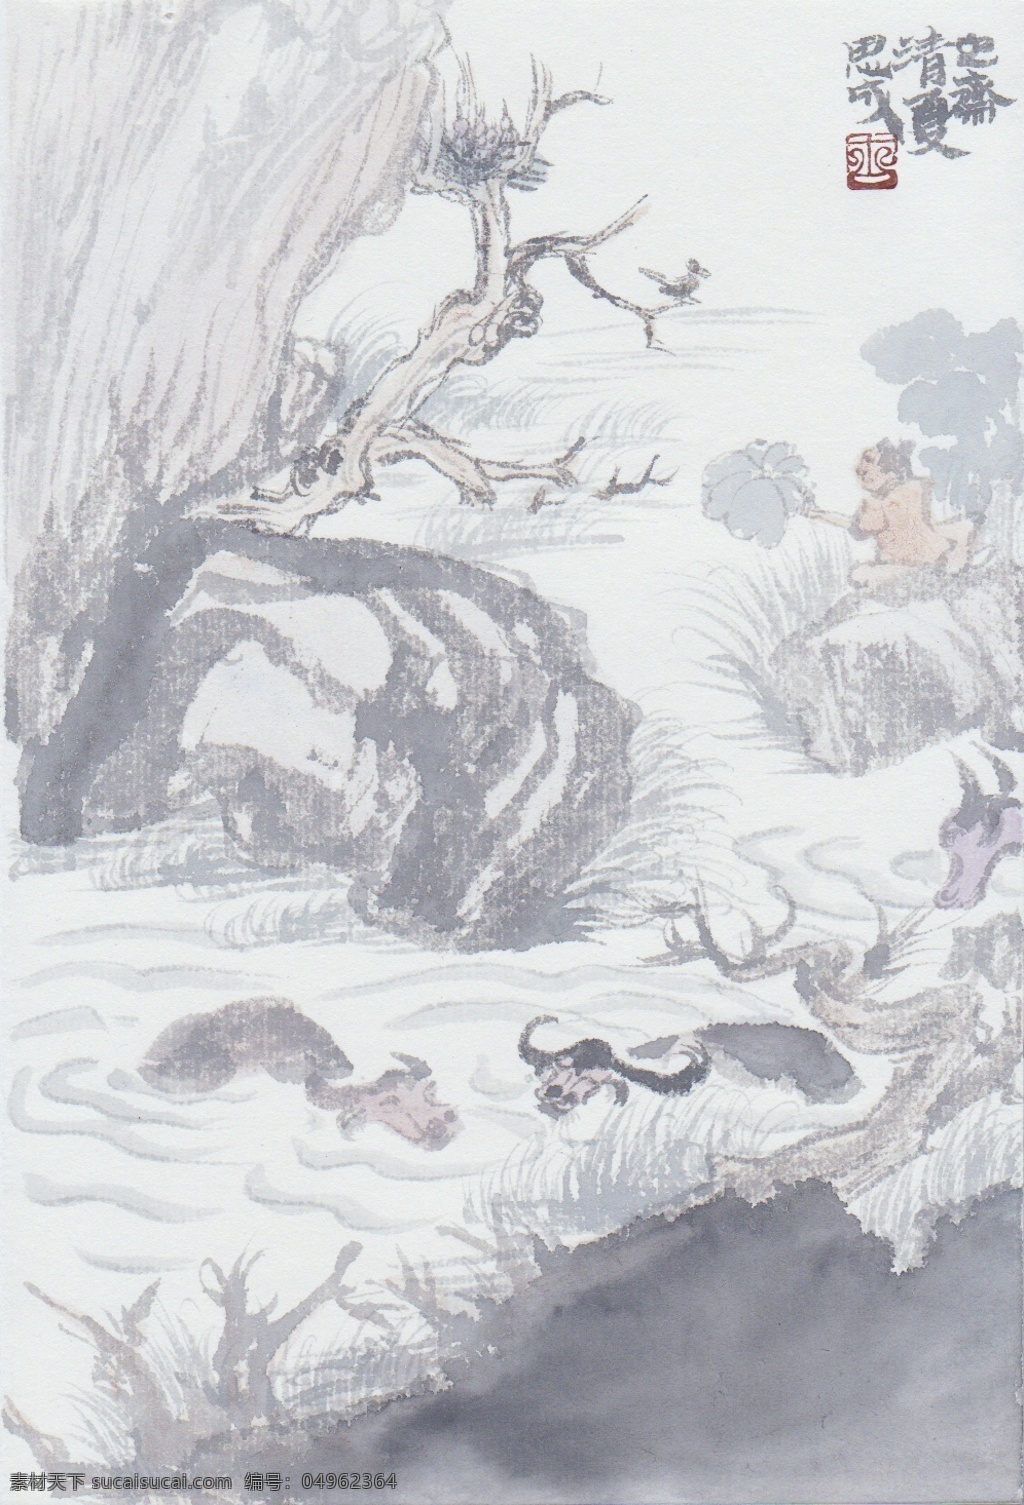 2010 年 尤 思 成 国画作品 山水画 中国画 设计素材 山水画篇 中国画篇 书画美术 白色